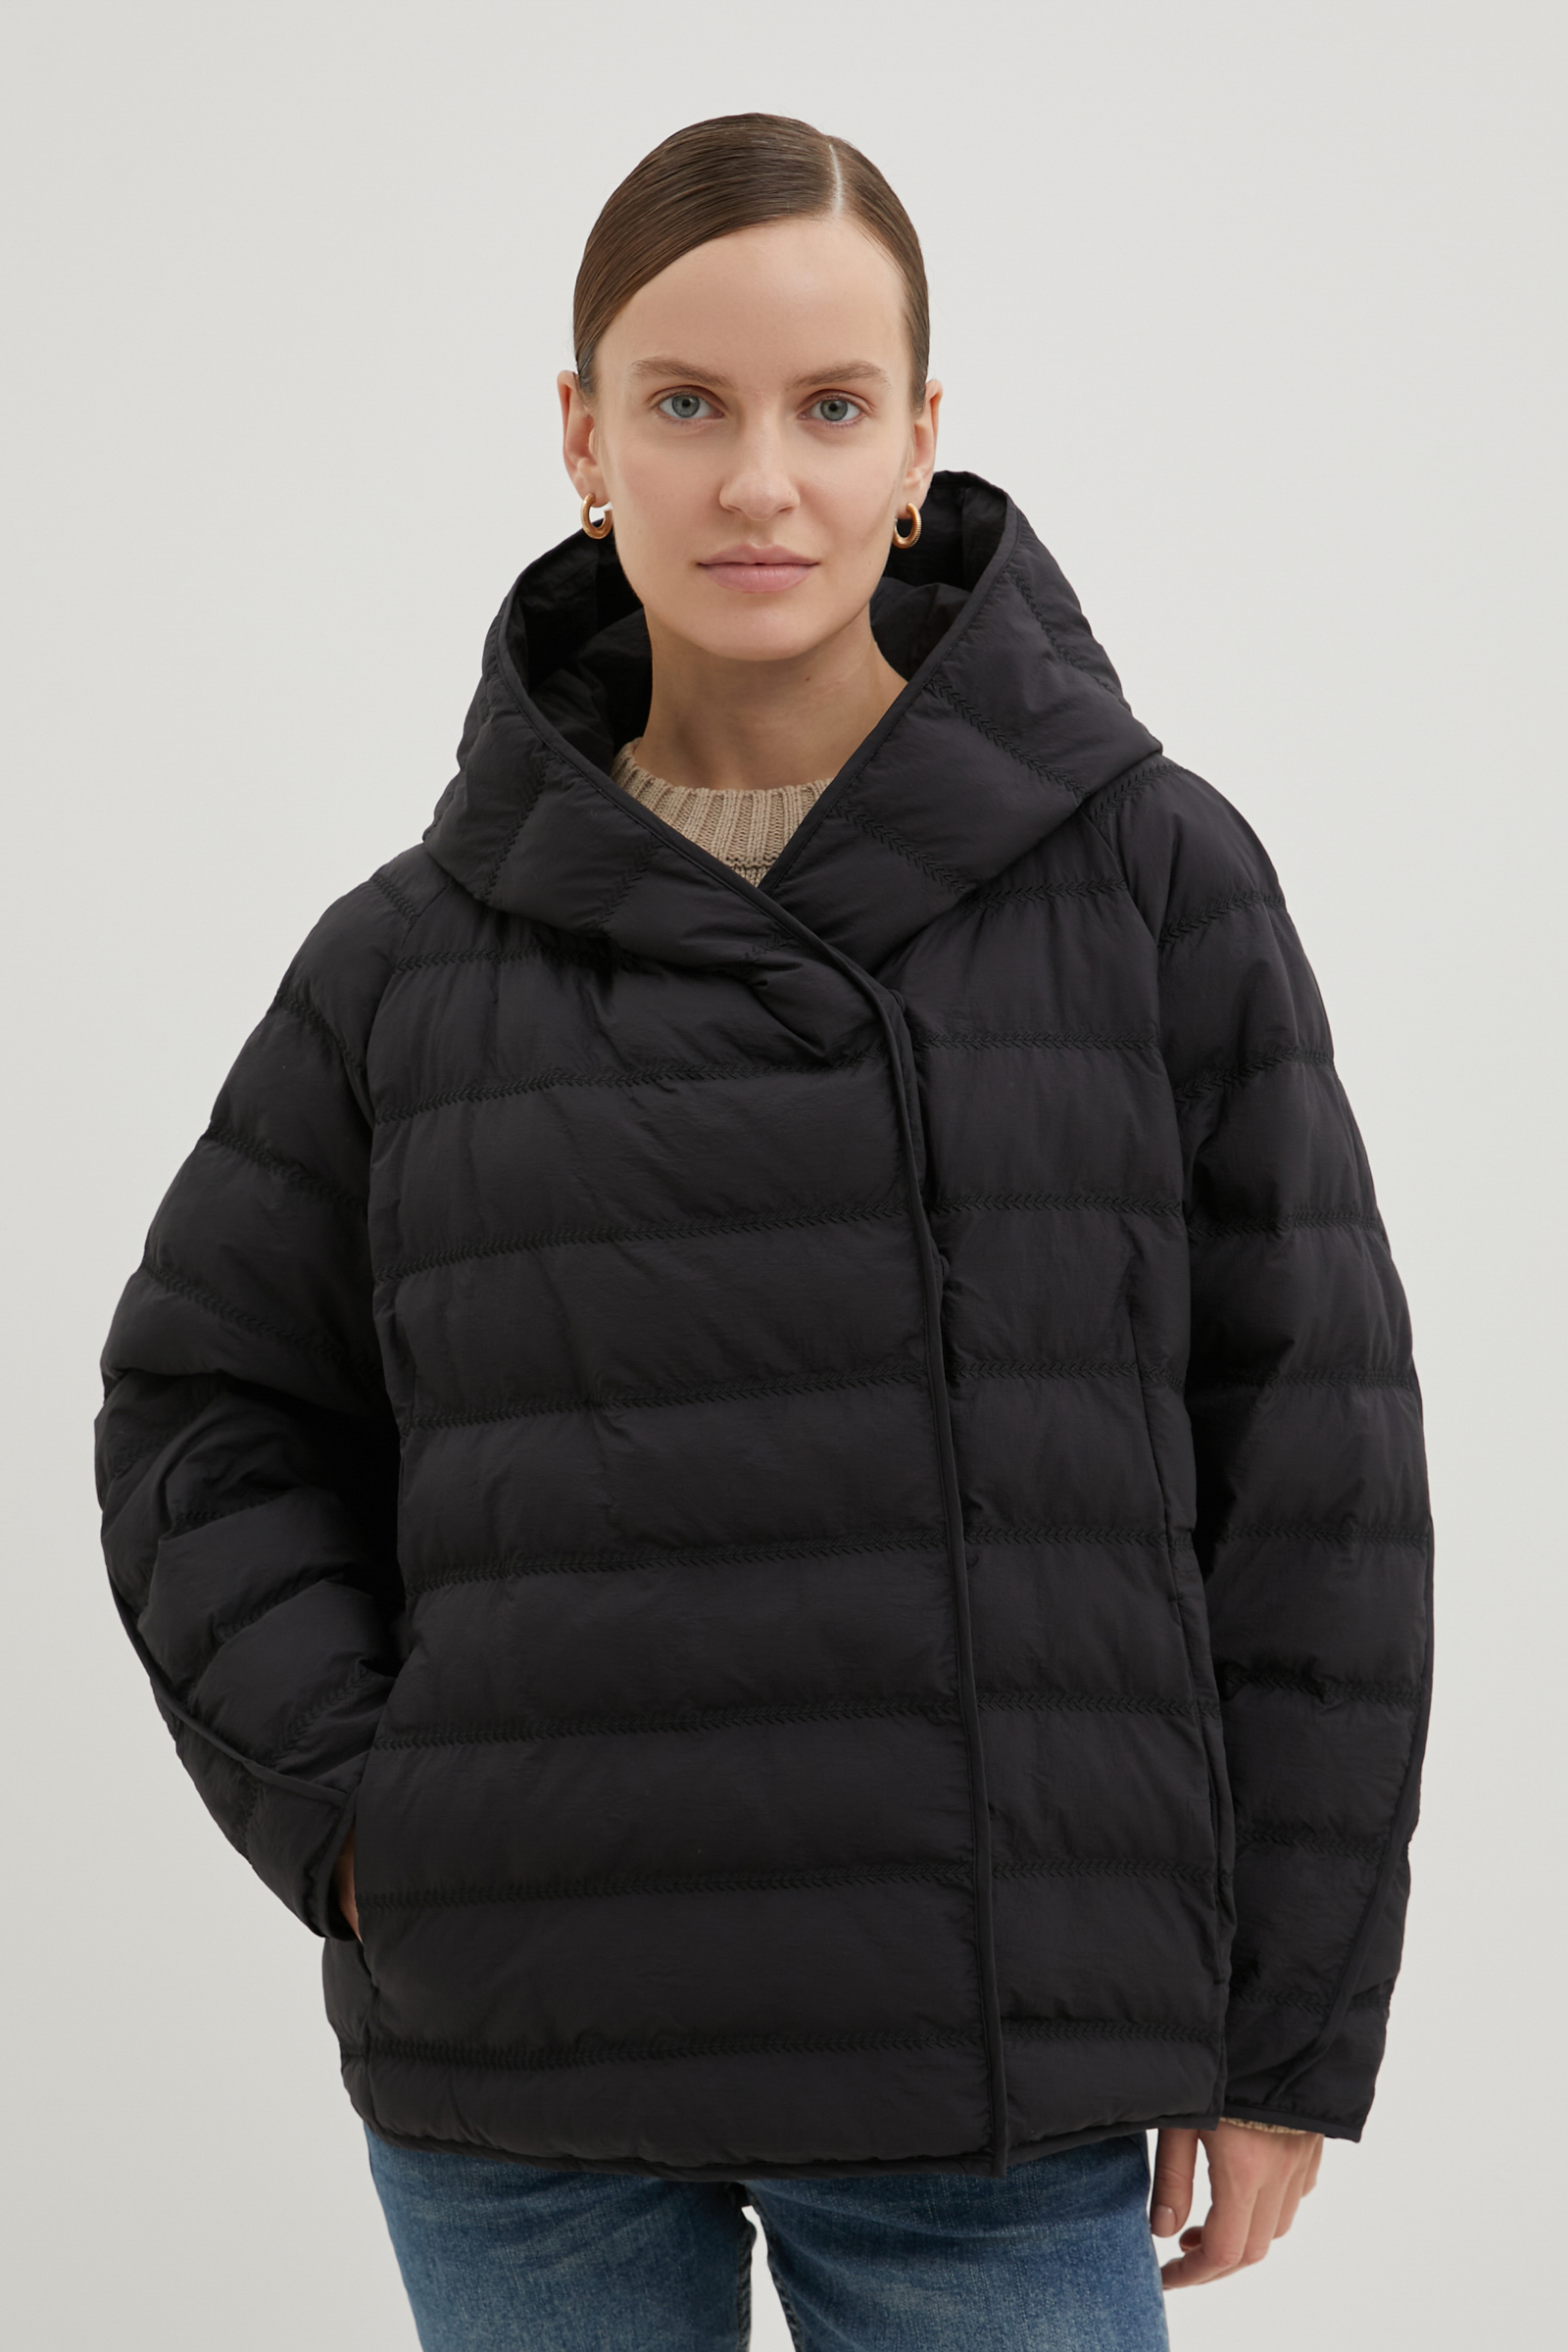 Куртка женская Finn Flare FBE11095 черная XL